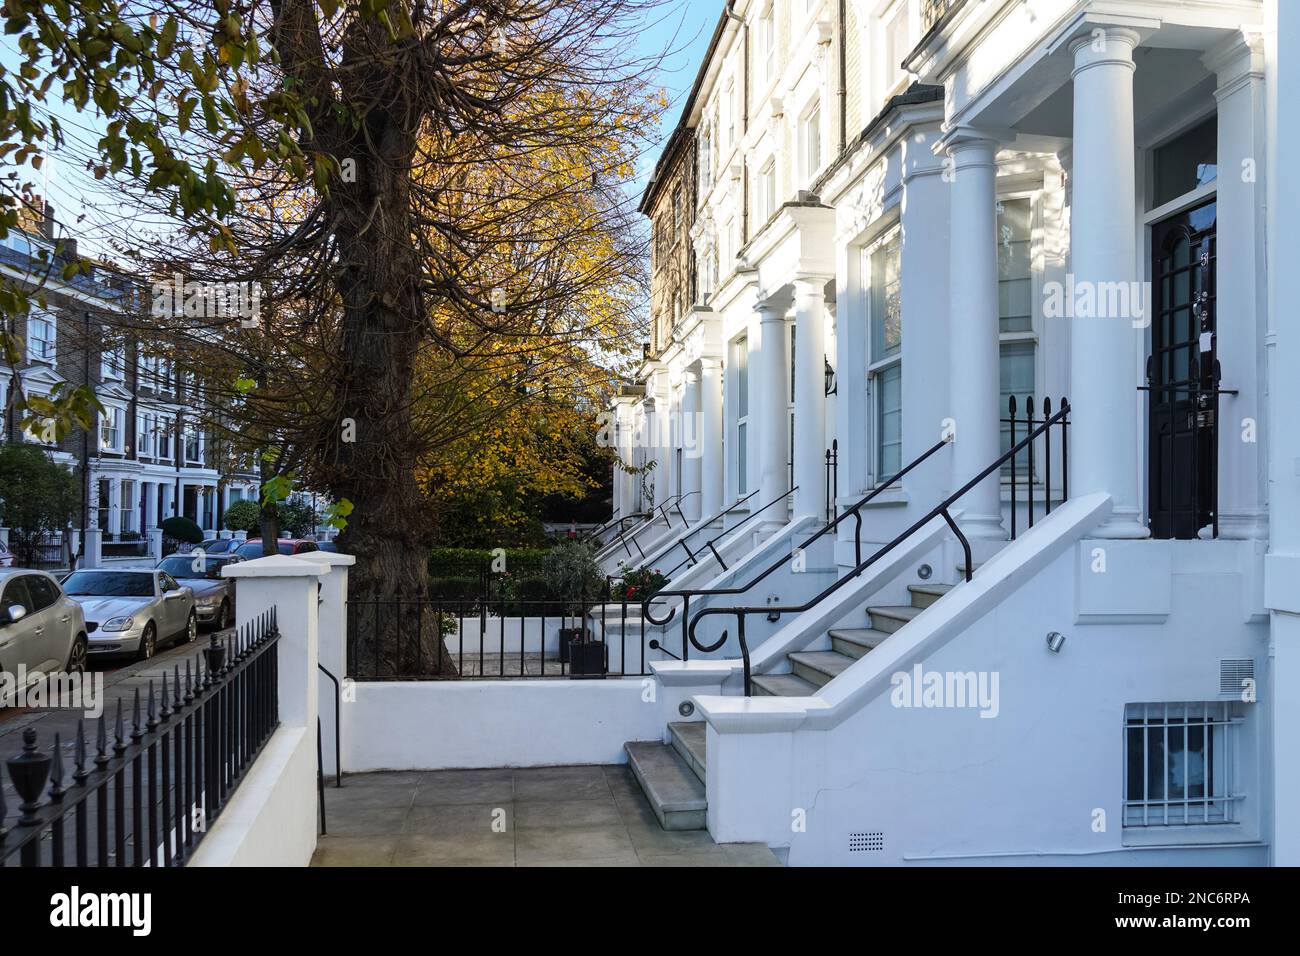 Maisons en terrasse victorienne à Kensington, Londres Angleterre Royaume-Uni Banque D'Images